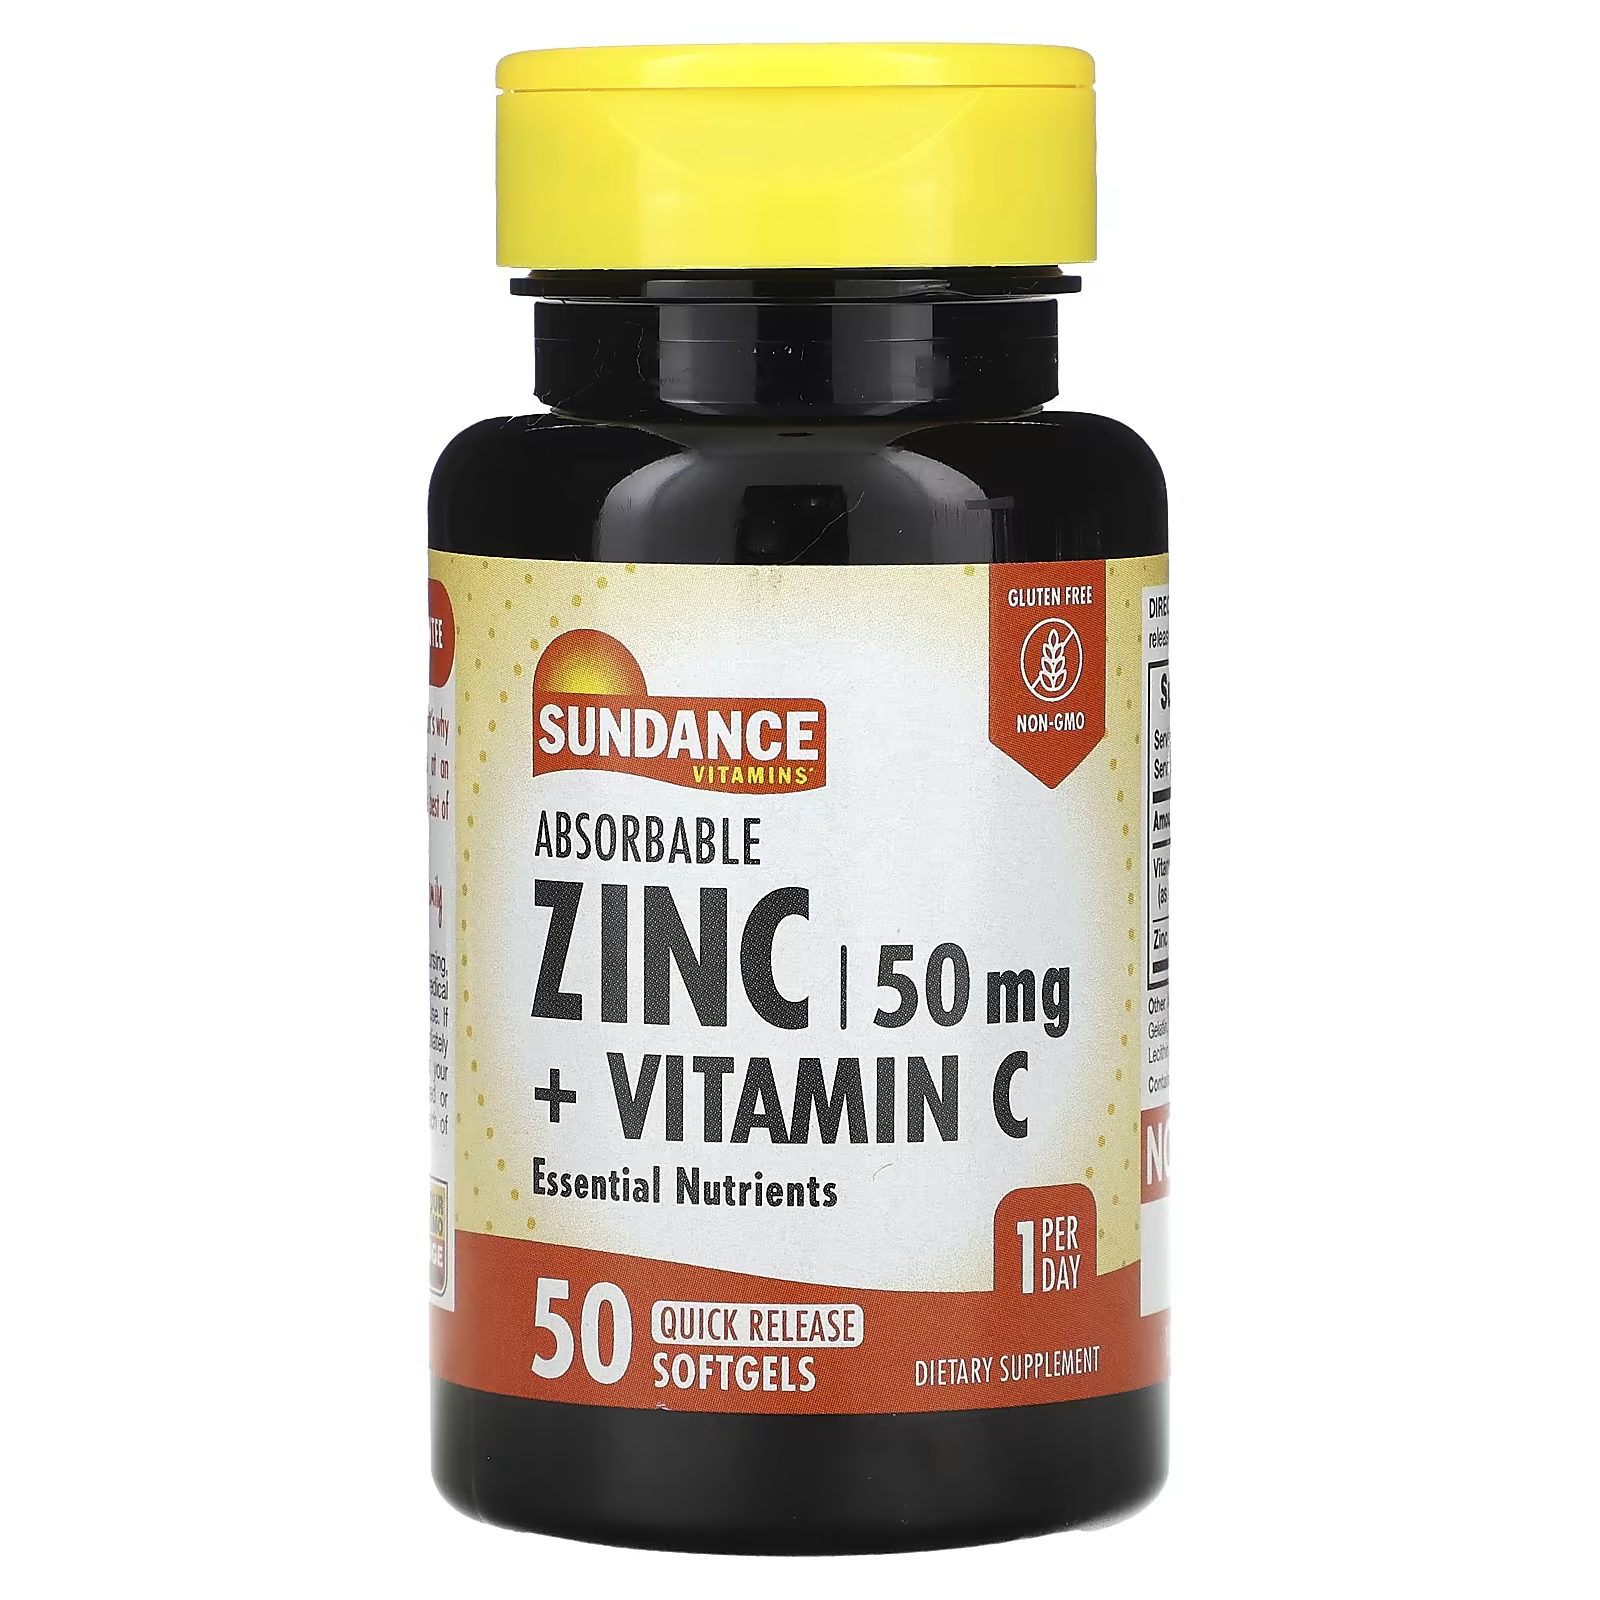 Sundance Витамины Рассасывающиеся цинк + витамин С, 50 мягких таблеток быстрого высвобождения Sundance Vitamins